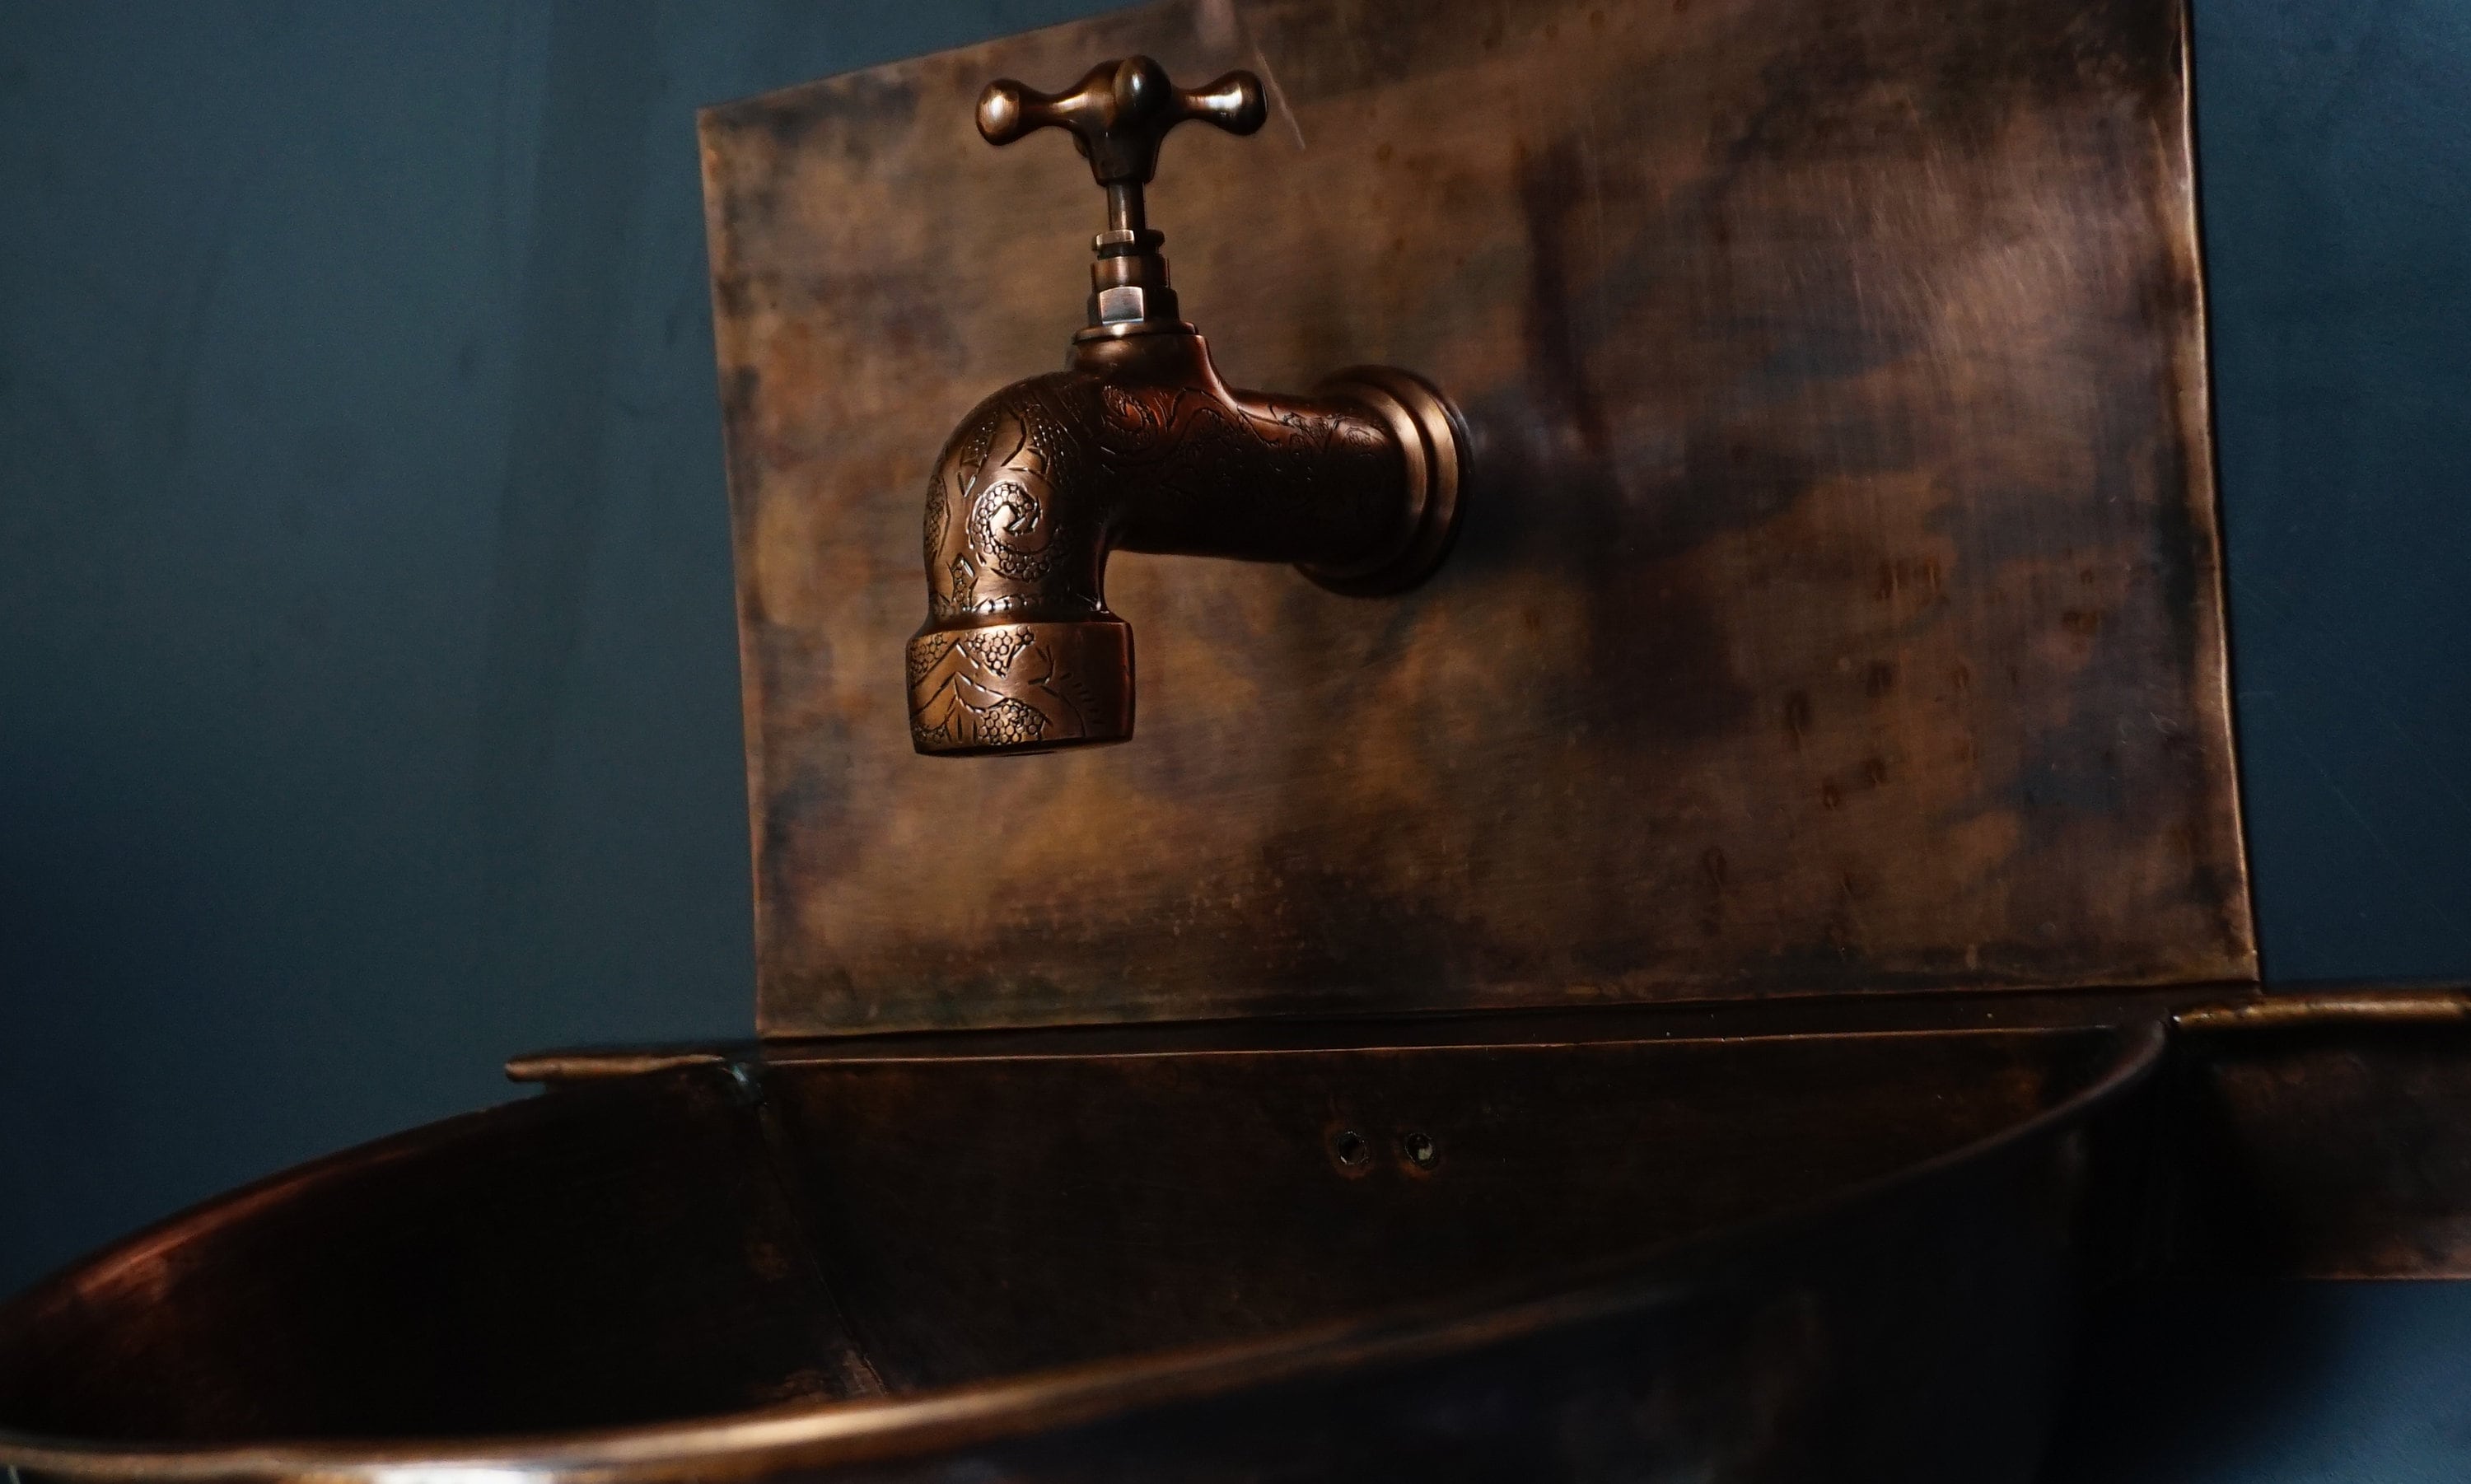 Rustic Copper wall mount vessel sink Bathroom Zayian